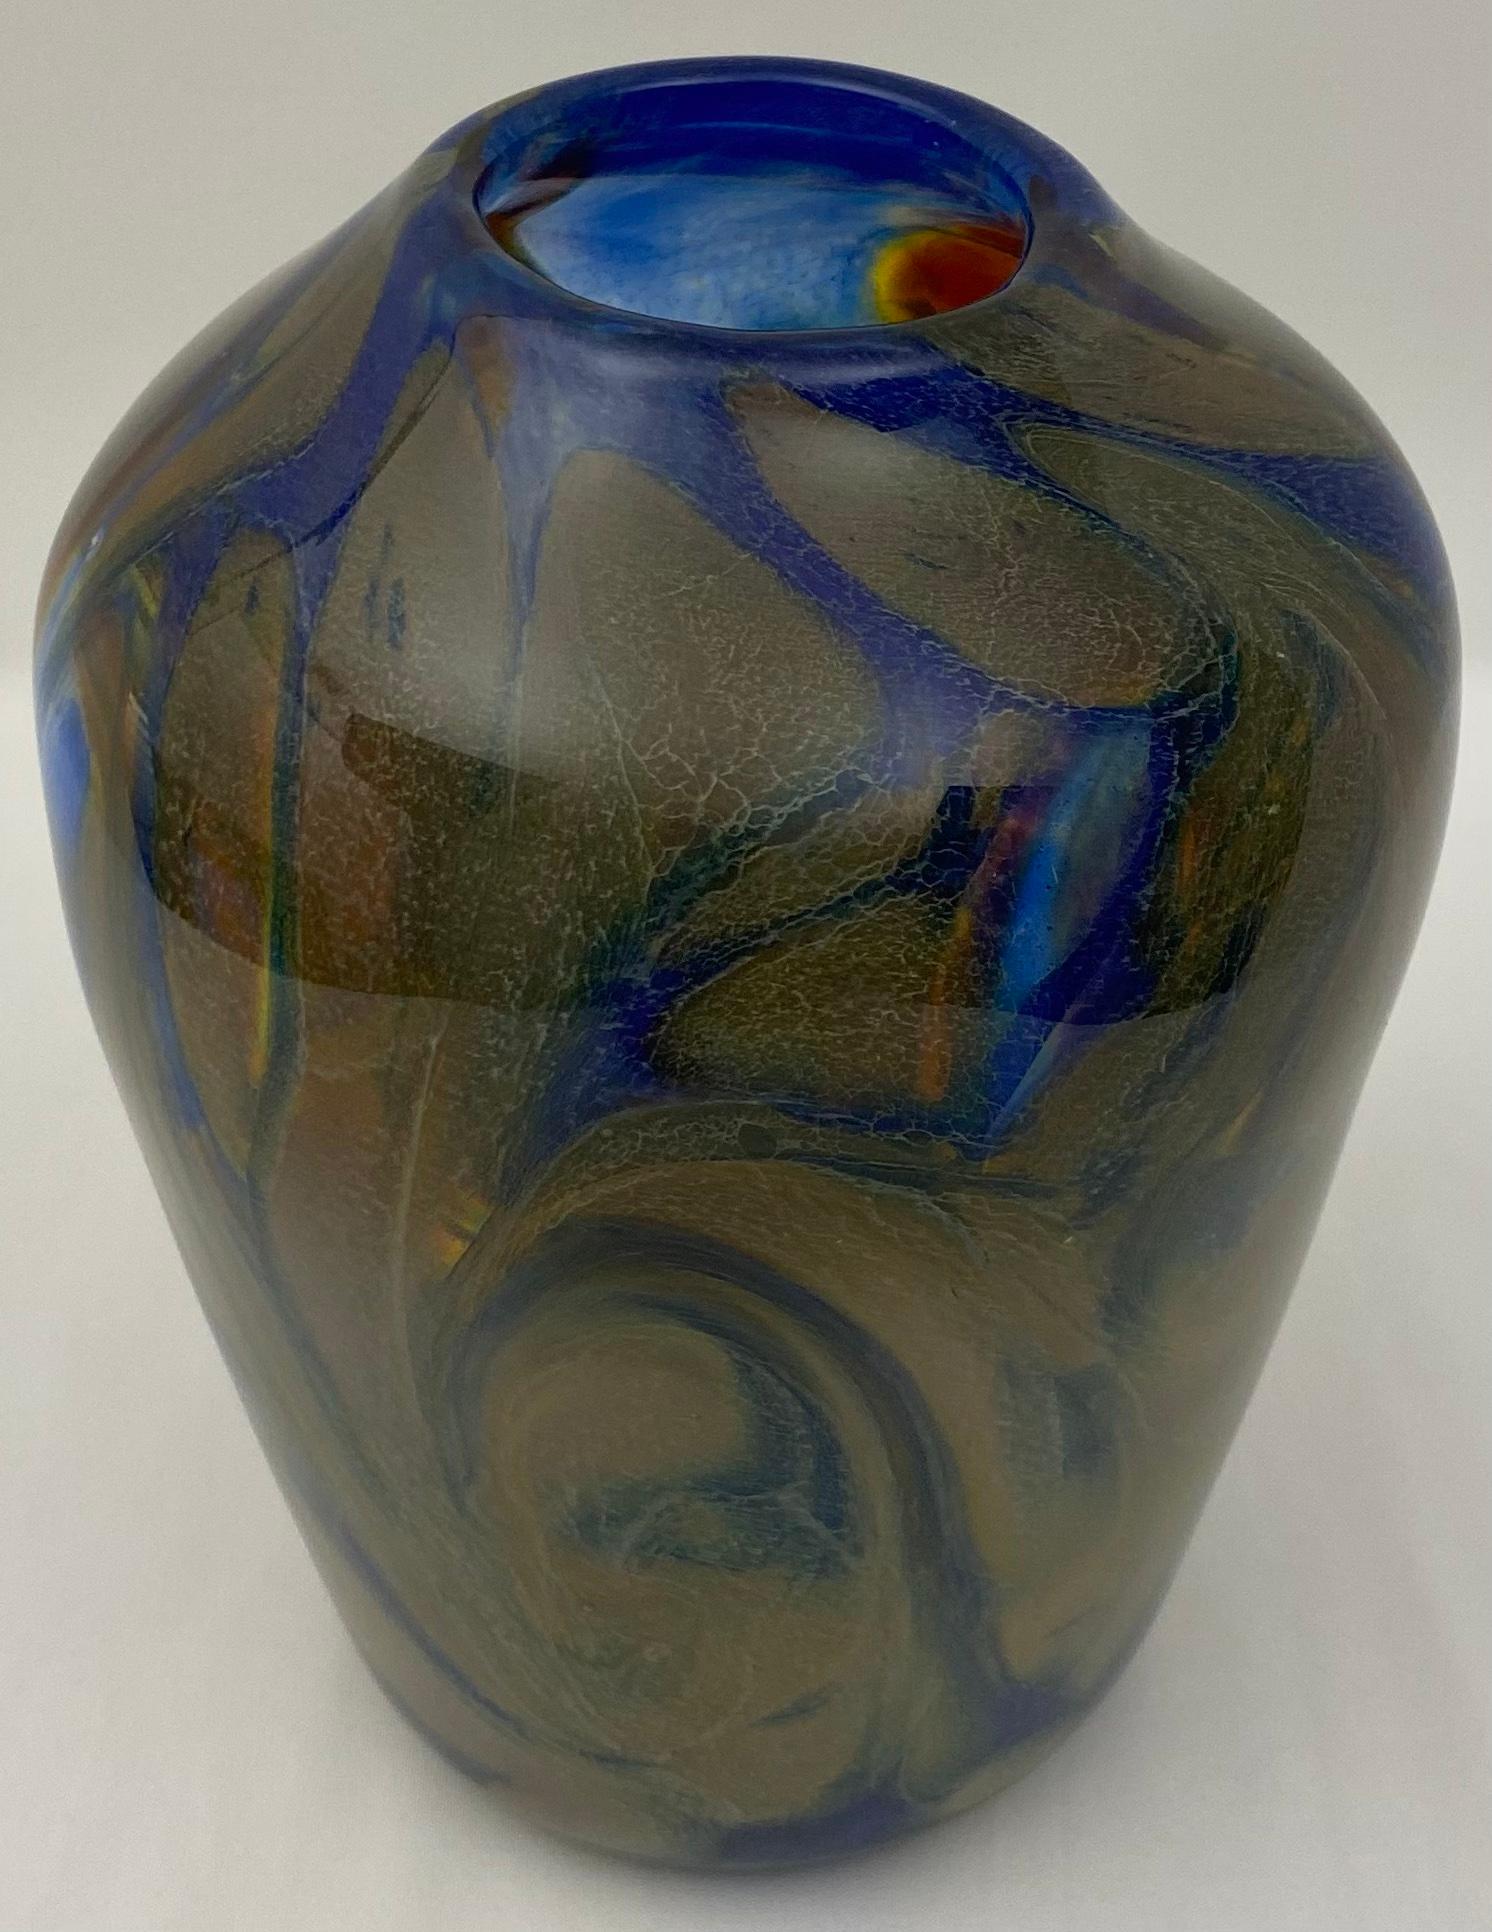 Elegant gestaltete Fratelli Toso Murano Kunstglasvase, die sich perfekt für die Präsentation Ihrer Lieblingsblumen eignet. 

Atemberaubende Farben und Design.
Sehr guter Vintage-Zustand, keine Risse oder Chips. 
Maße: 7 1/4